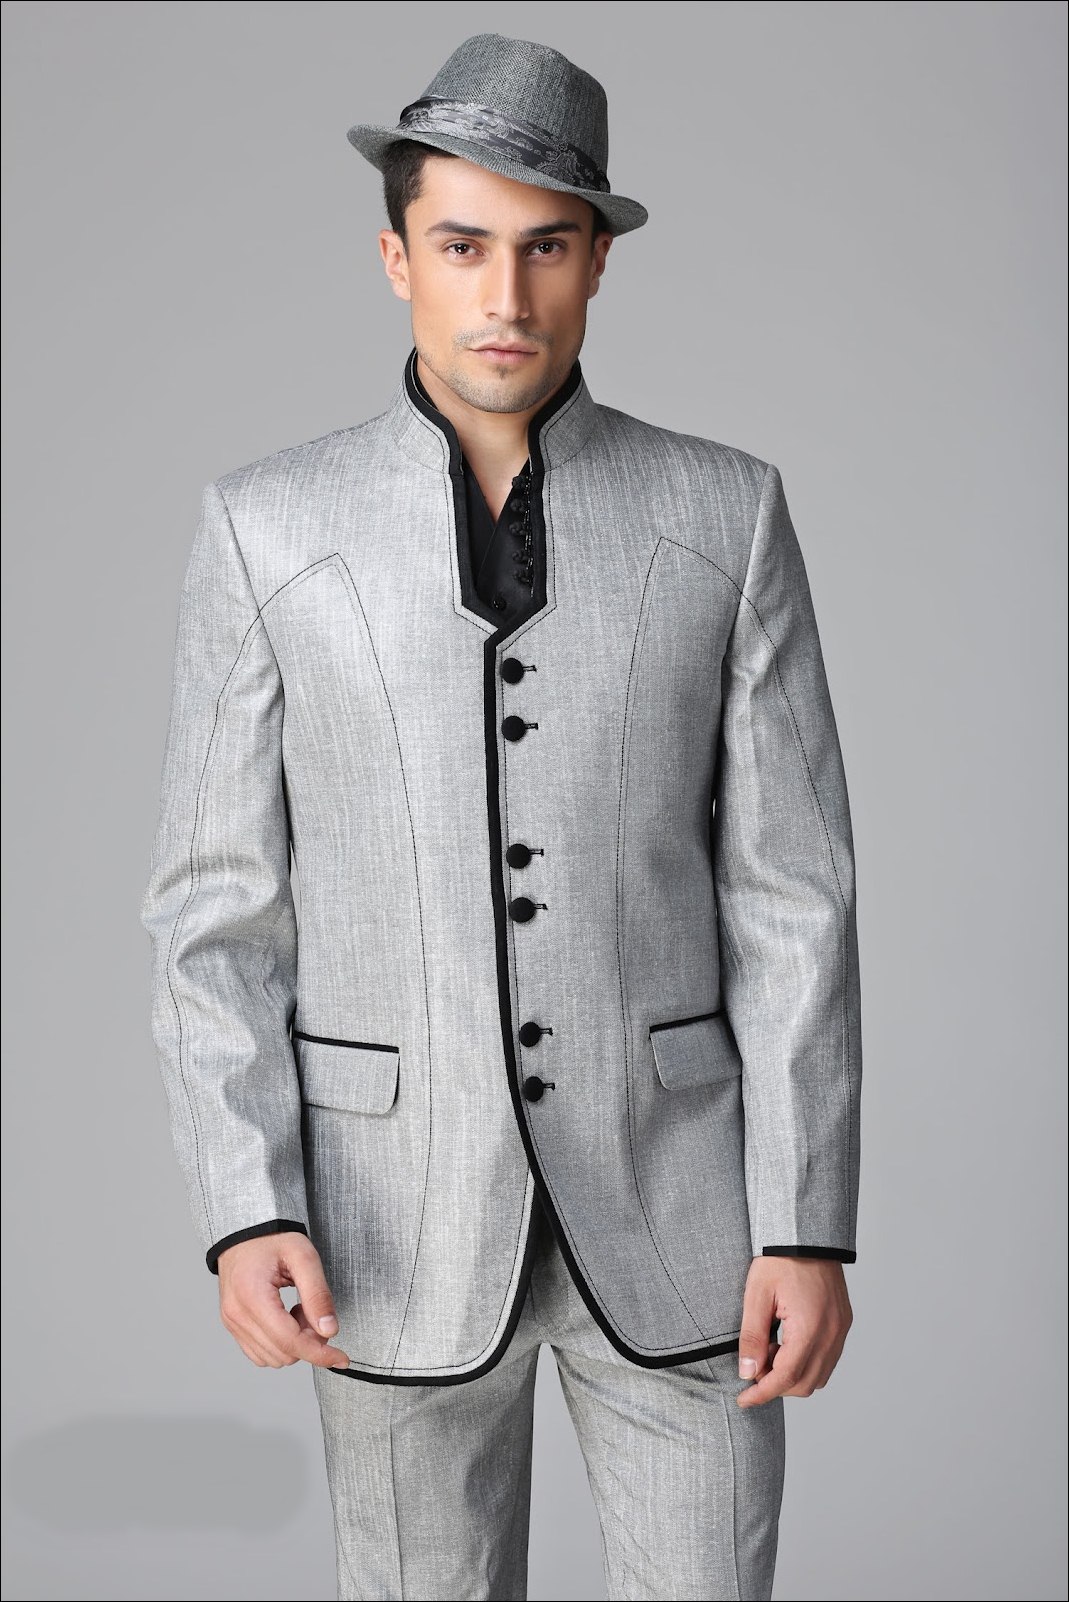 Best Designer Suits For Men